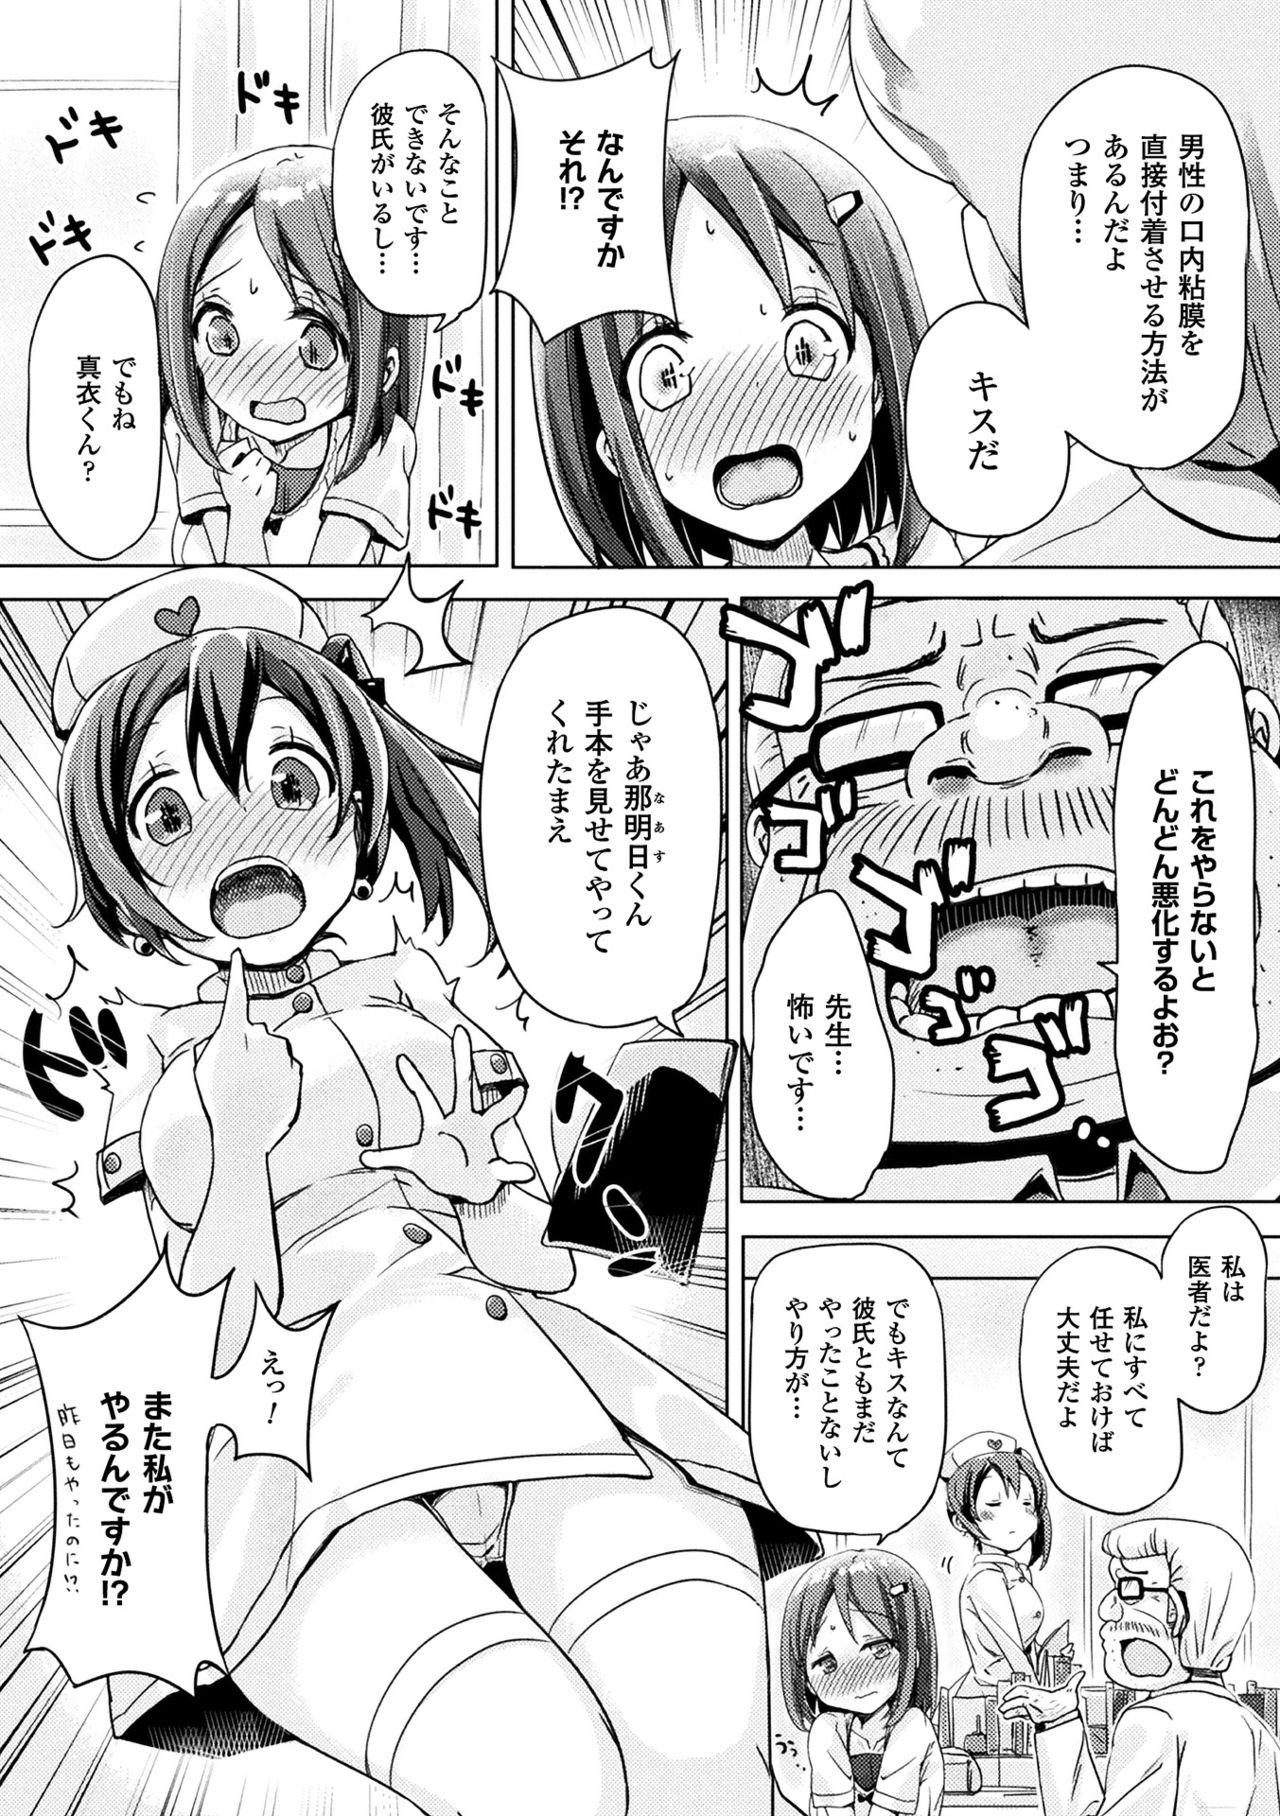 2D Comic Magazine Kuchibenki Heroines Karen na Okuchi wa Nama Onaho Vol. 2 46